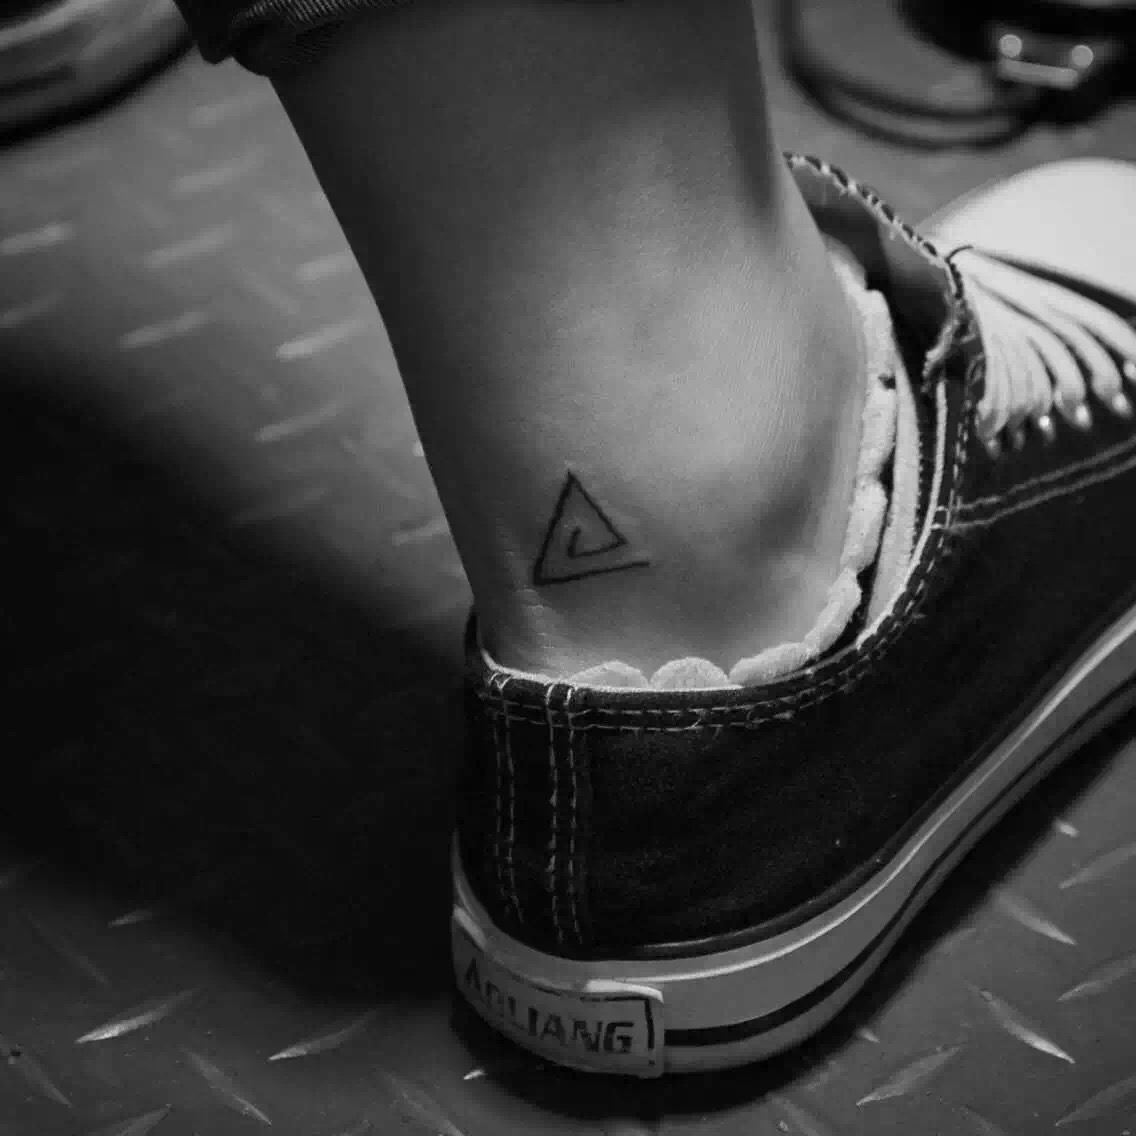 广州张小姐脚踝处的线条三角形图腾纹身图案